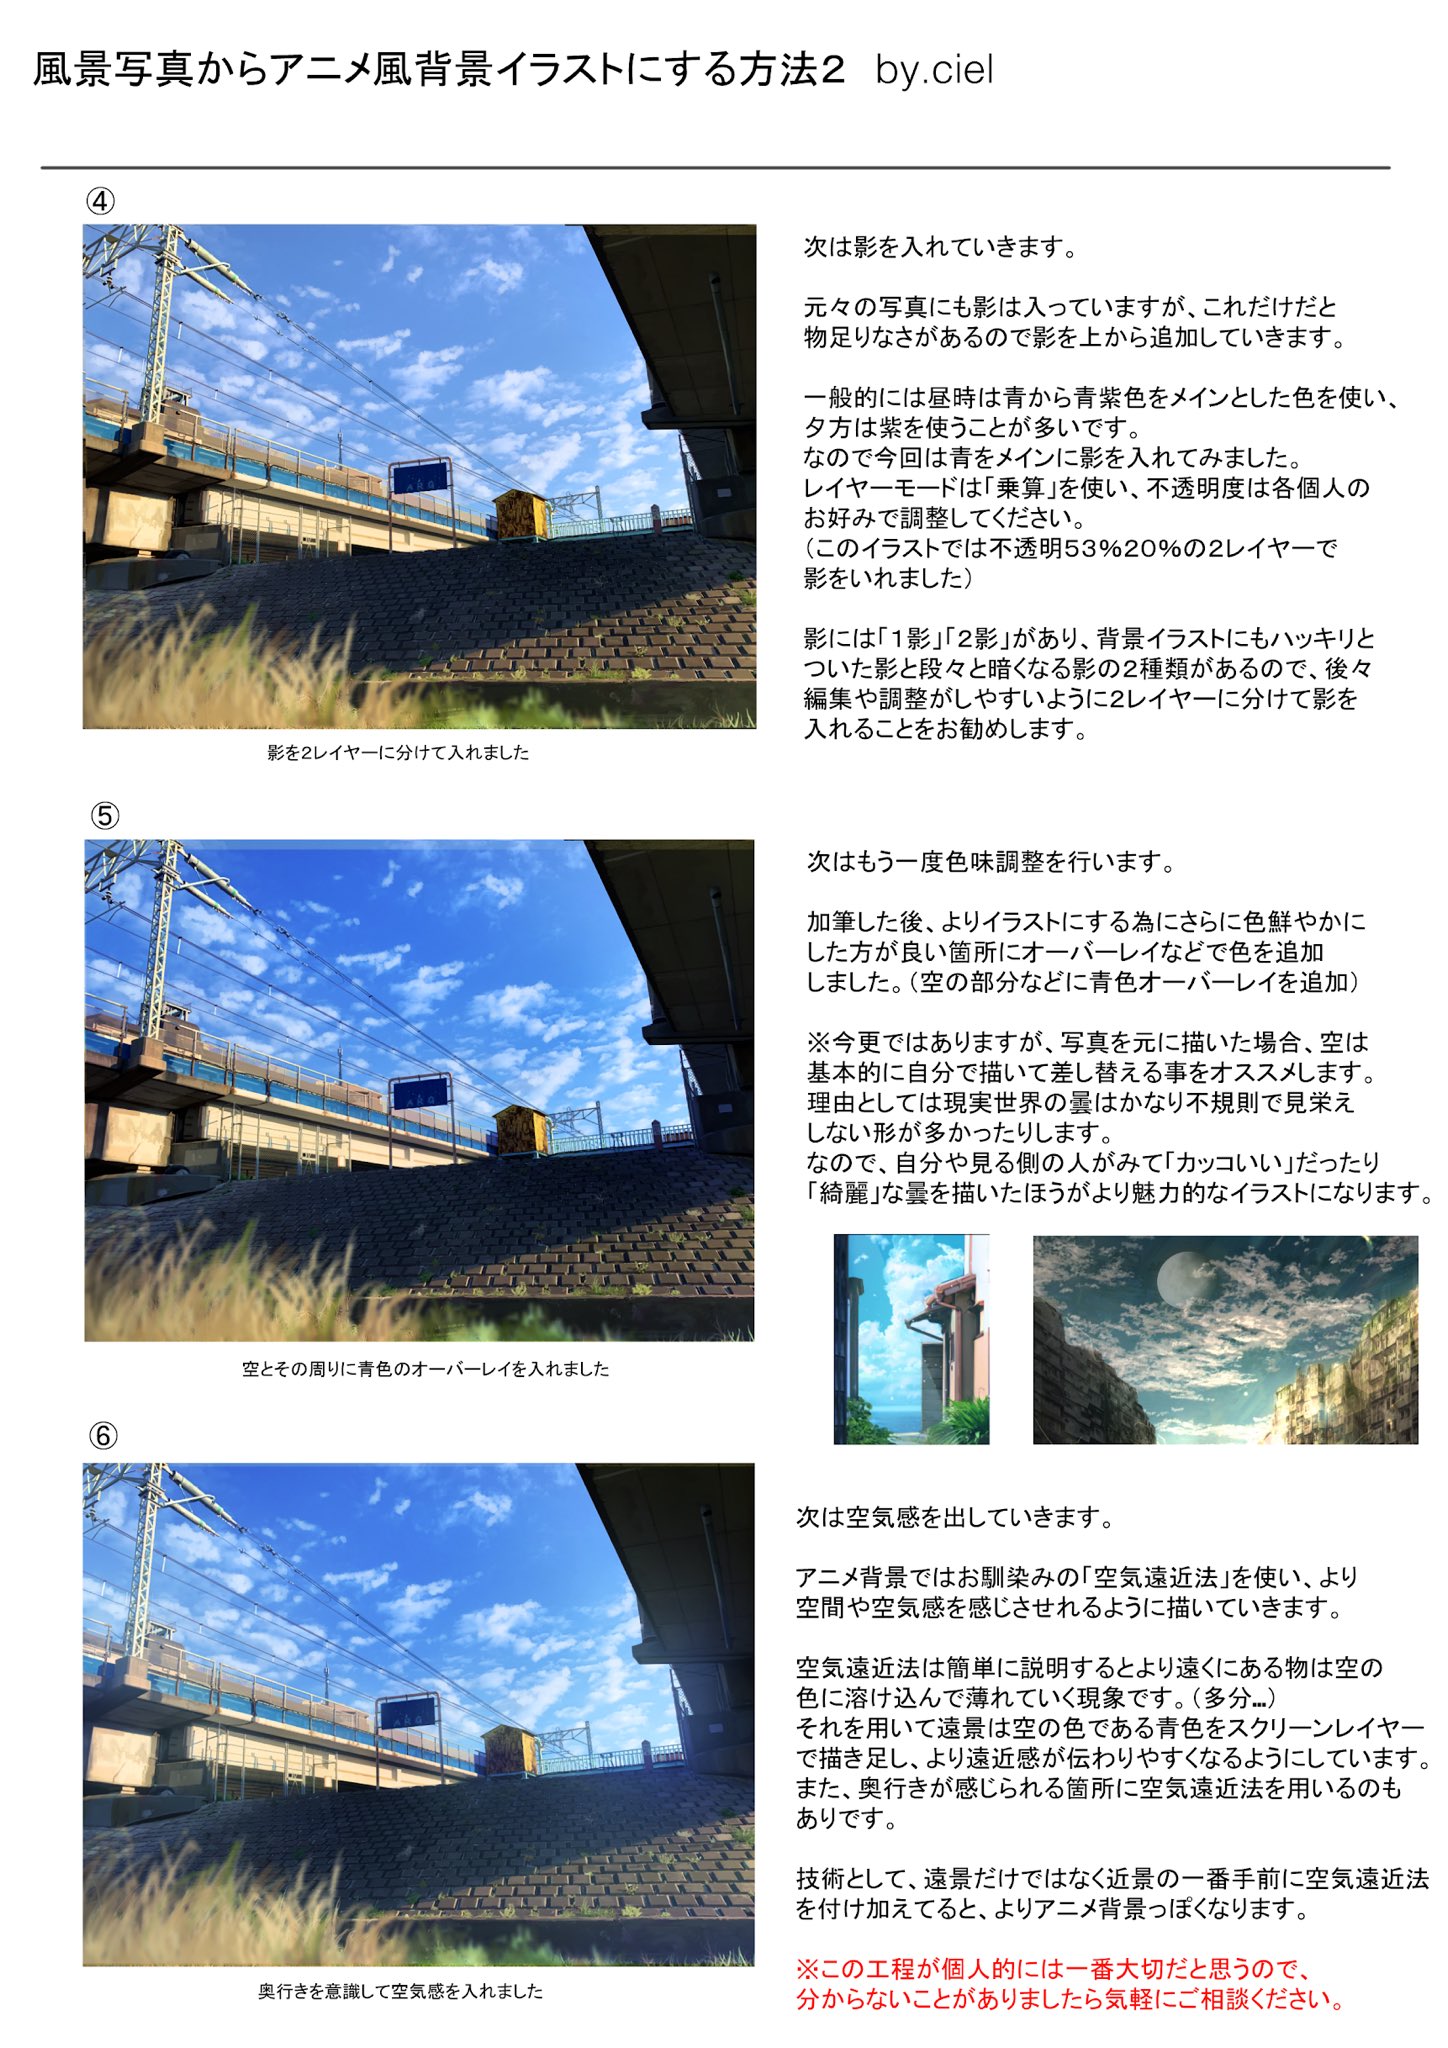 Ciel 風景写真からアニメ背景風イラストにする方法の解説です